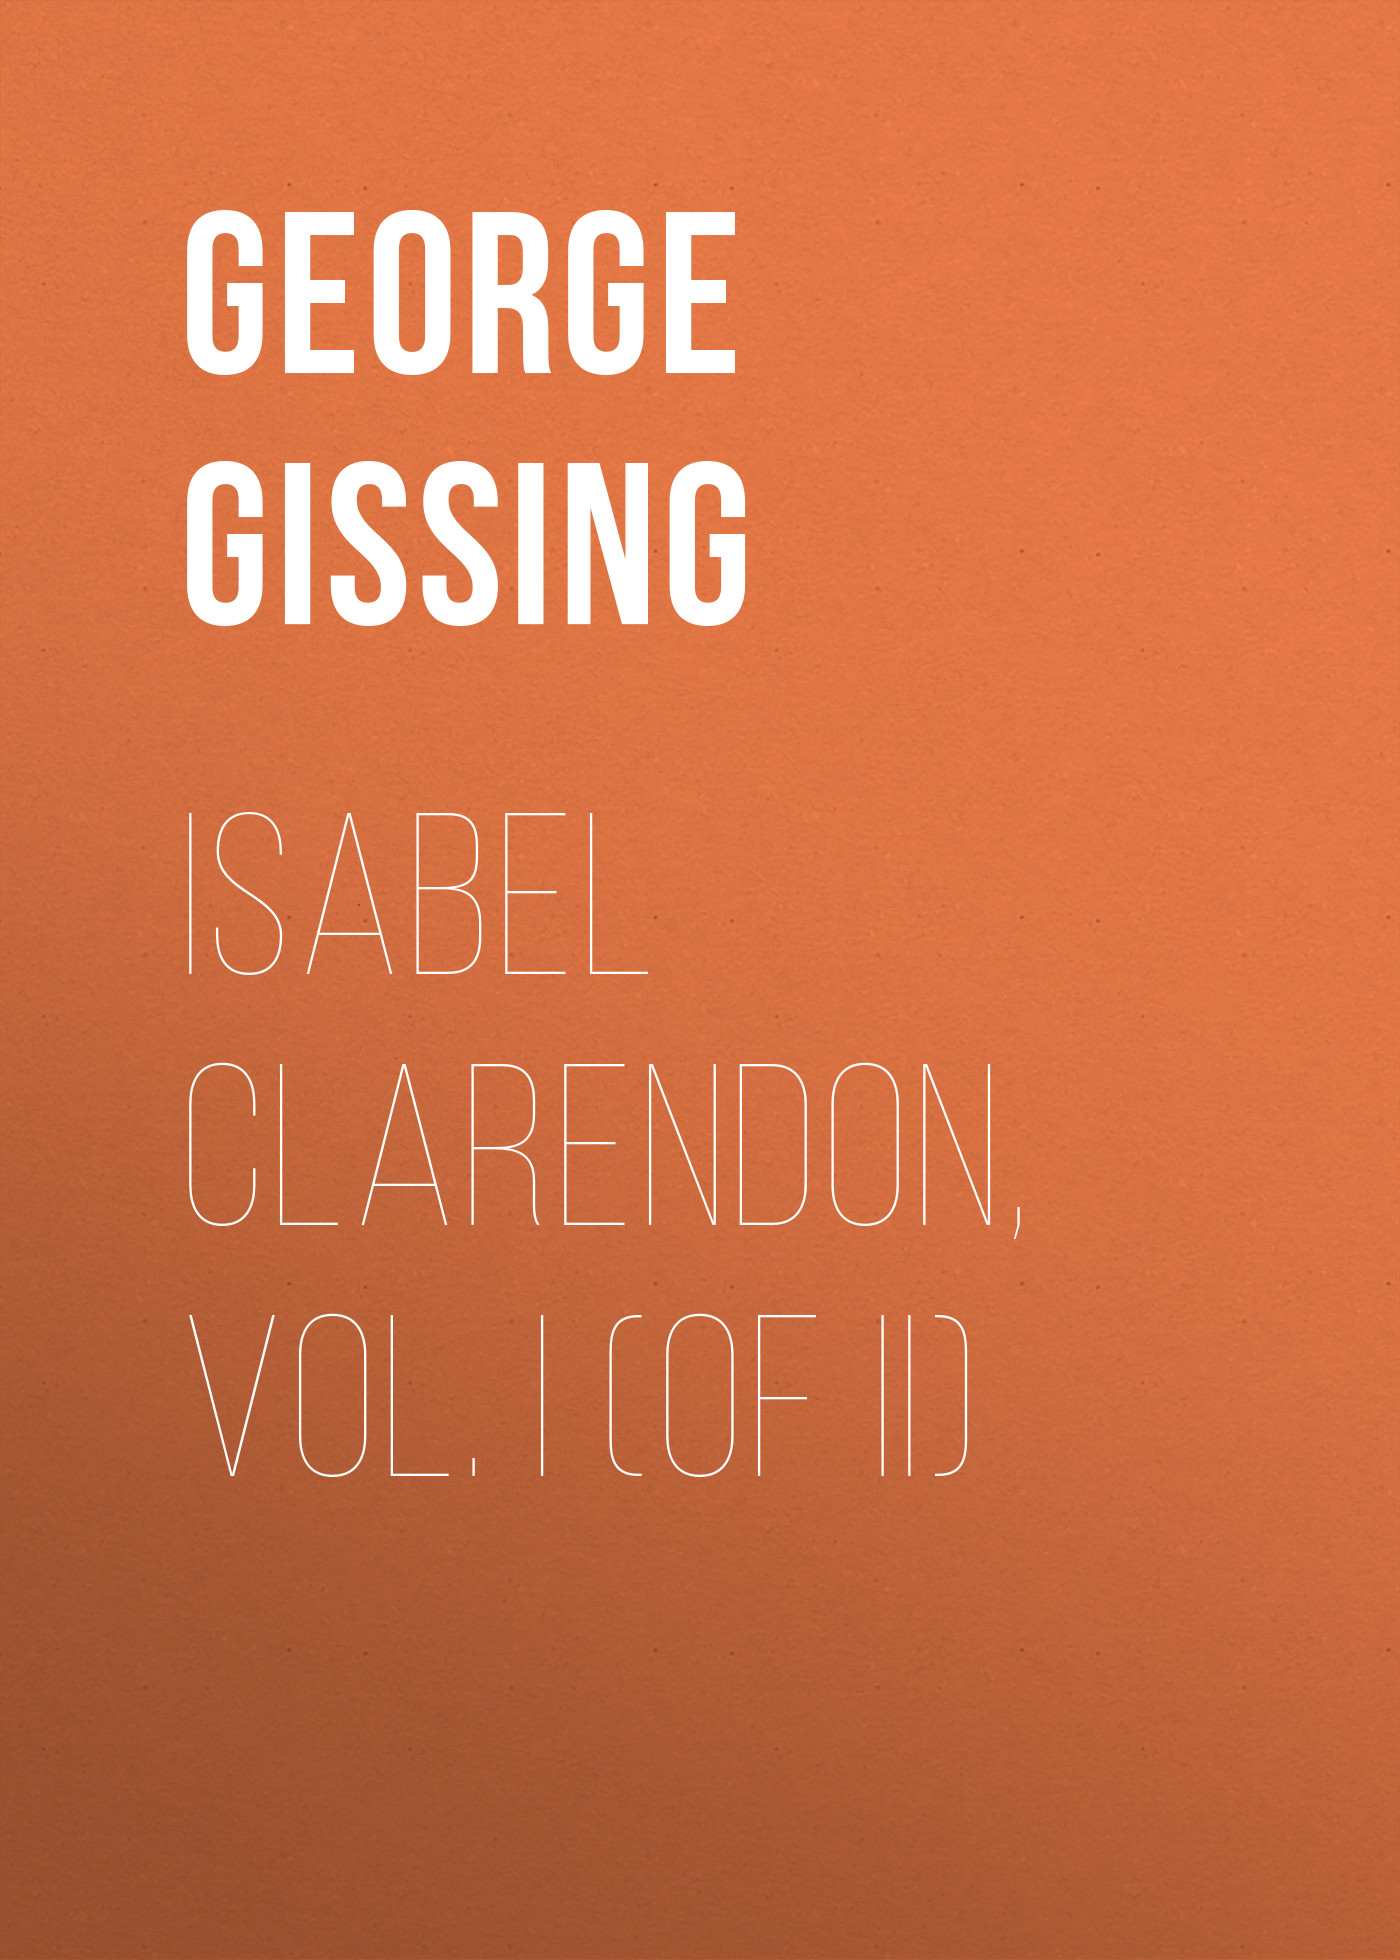 Книга Isabel Clarendon, Vol. I (of II) из серии , созданная George Gissing, может относится к жанру Зарубежная классика, Литература 19 века, Зарубежная старинная литература. Стоимость электронной книги Isabel Clarendon, Vol. I (of II) с идентификатором 38307105 составляет 0 руб.